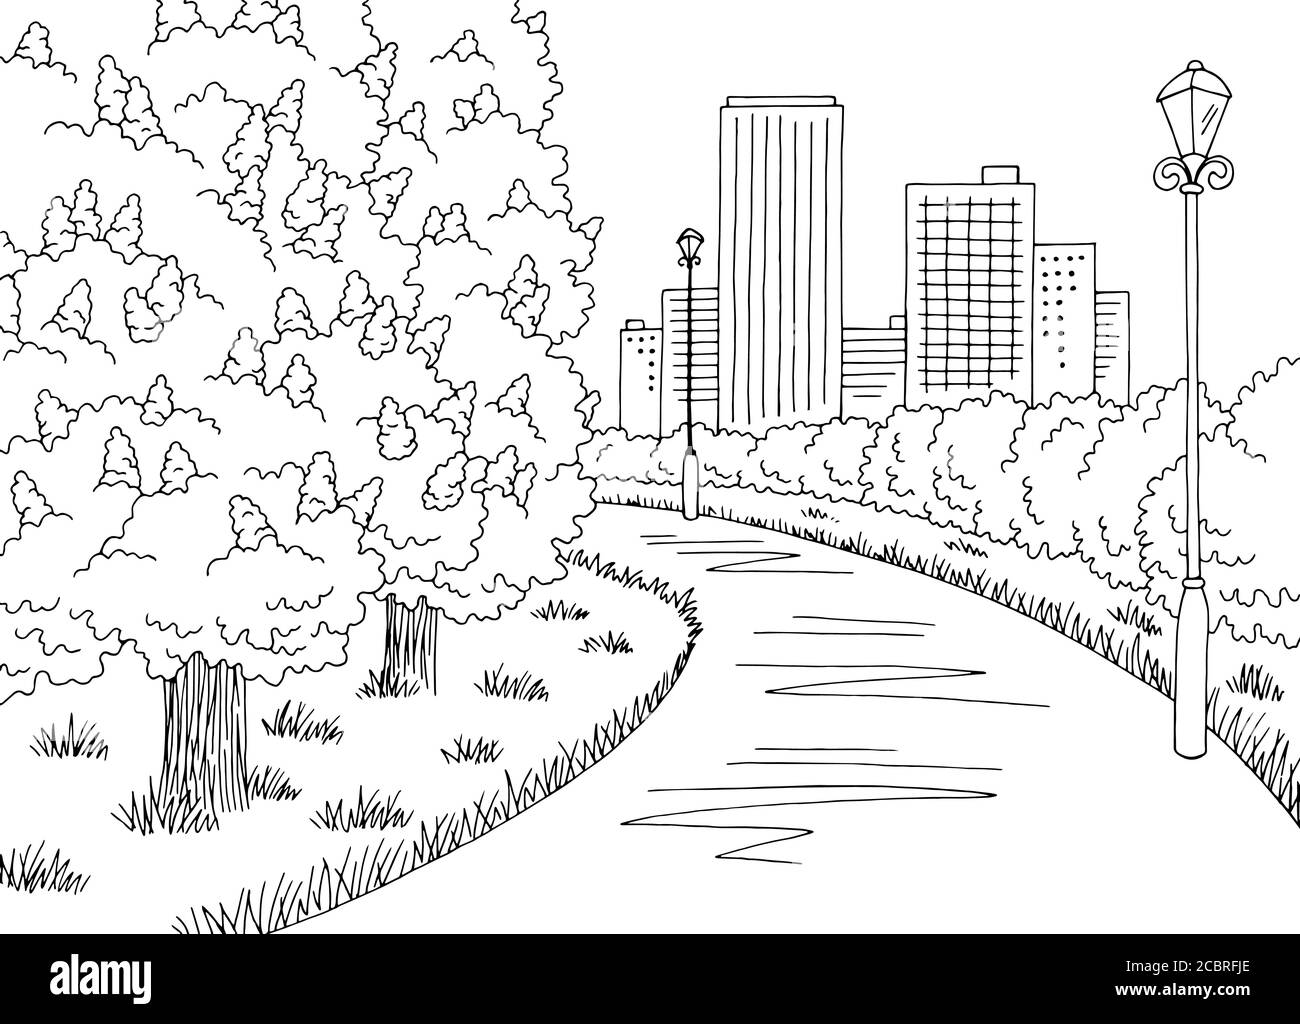 Parc graphique noir blanc châtaignier arbre fleurs paysage dessin illustration vecteur Illustration de Vecteur